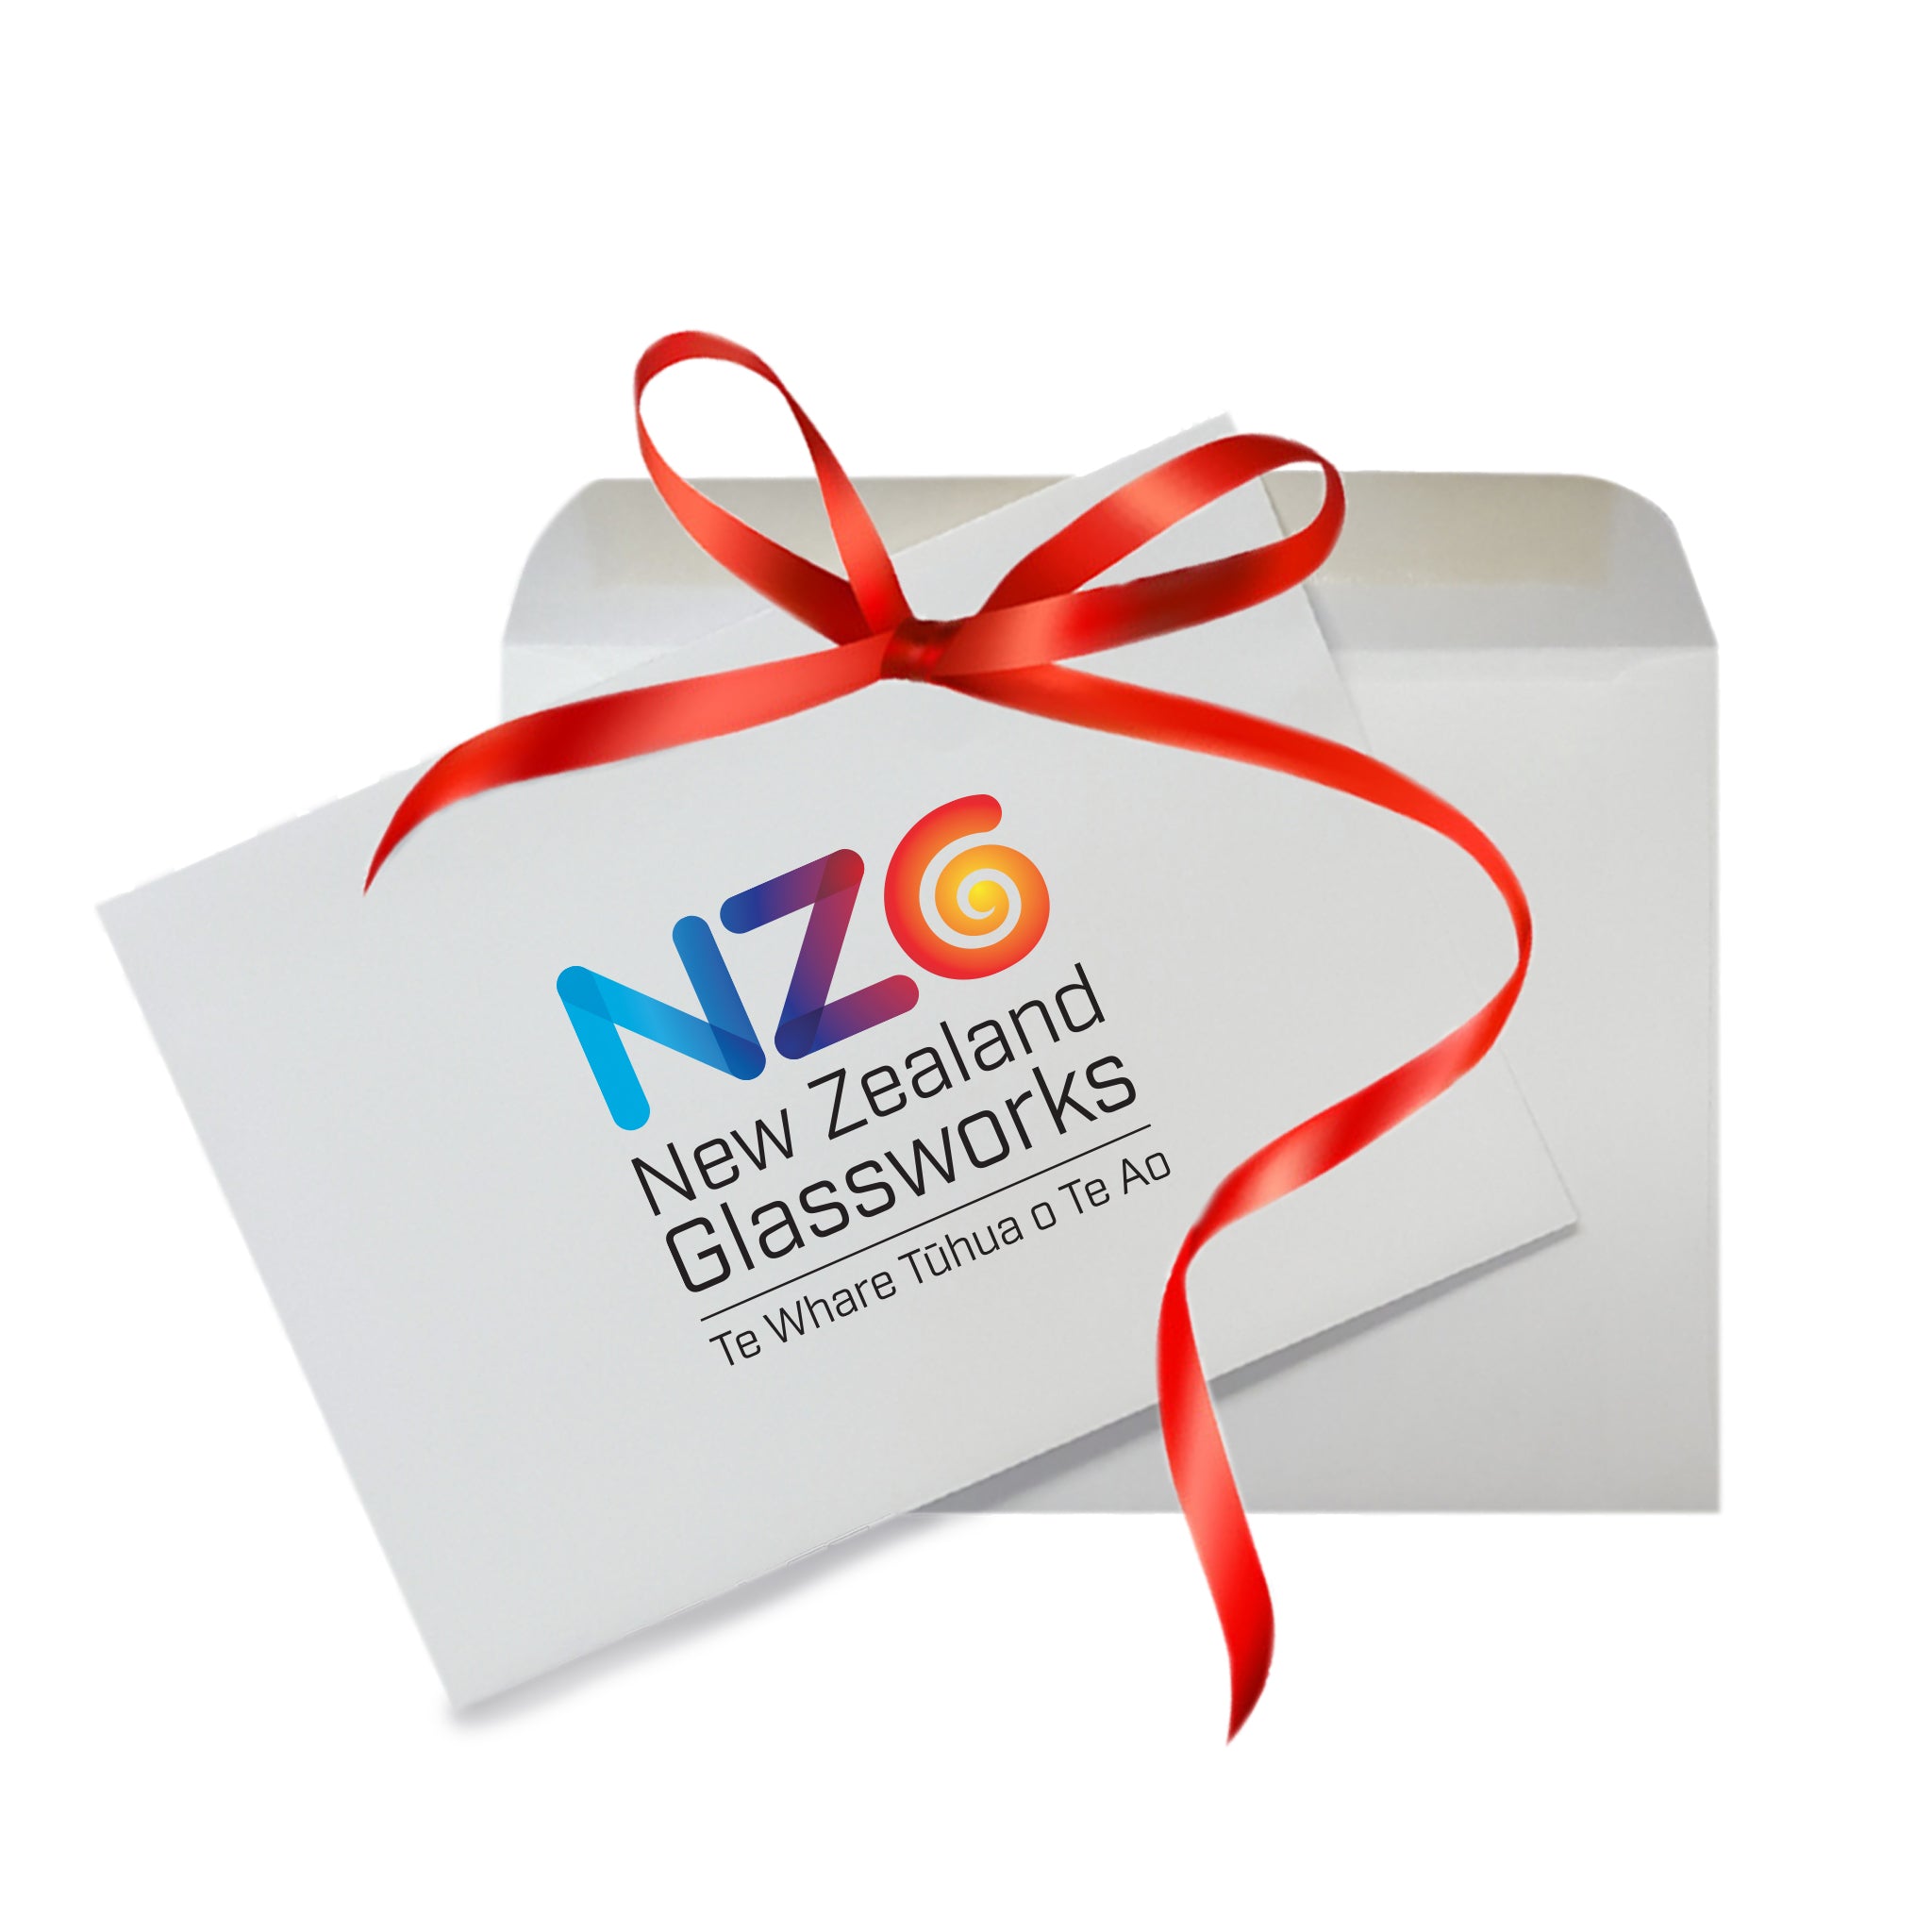 NZ Glassworks Gift Voucher | Online